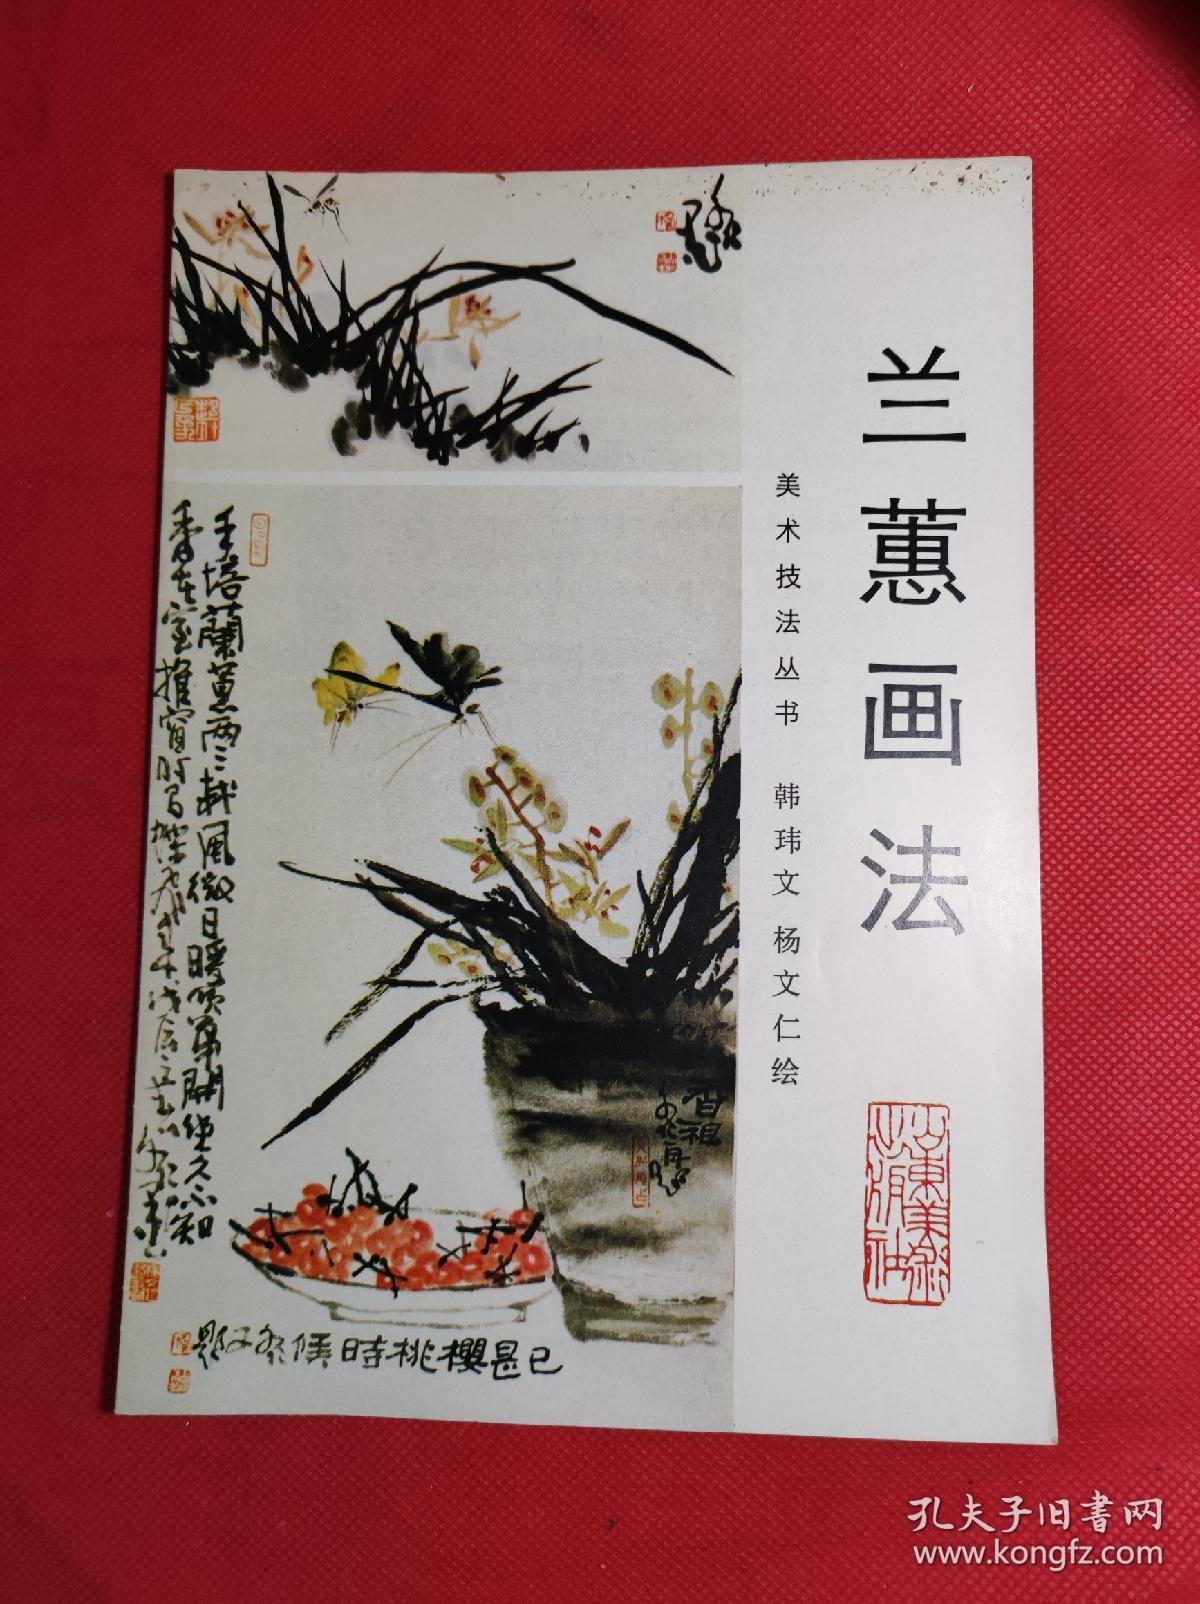 《兰蕙画法》 美术技法丛书 韩玮文、杨文仁绘 16开 1990 8 一版一印，有彩色绘画，9品。B3区。